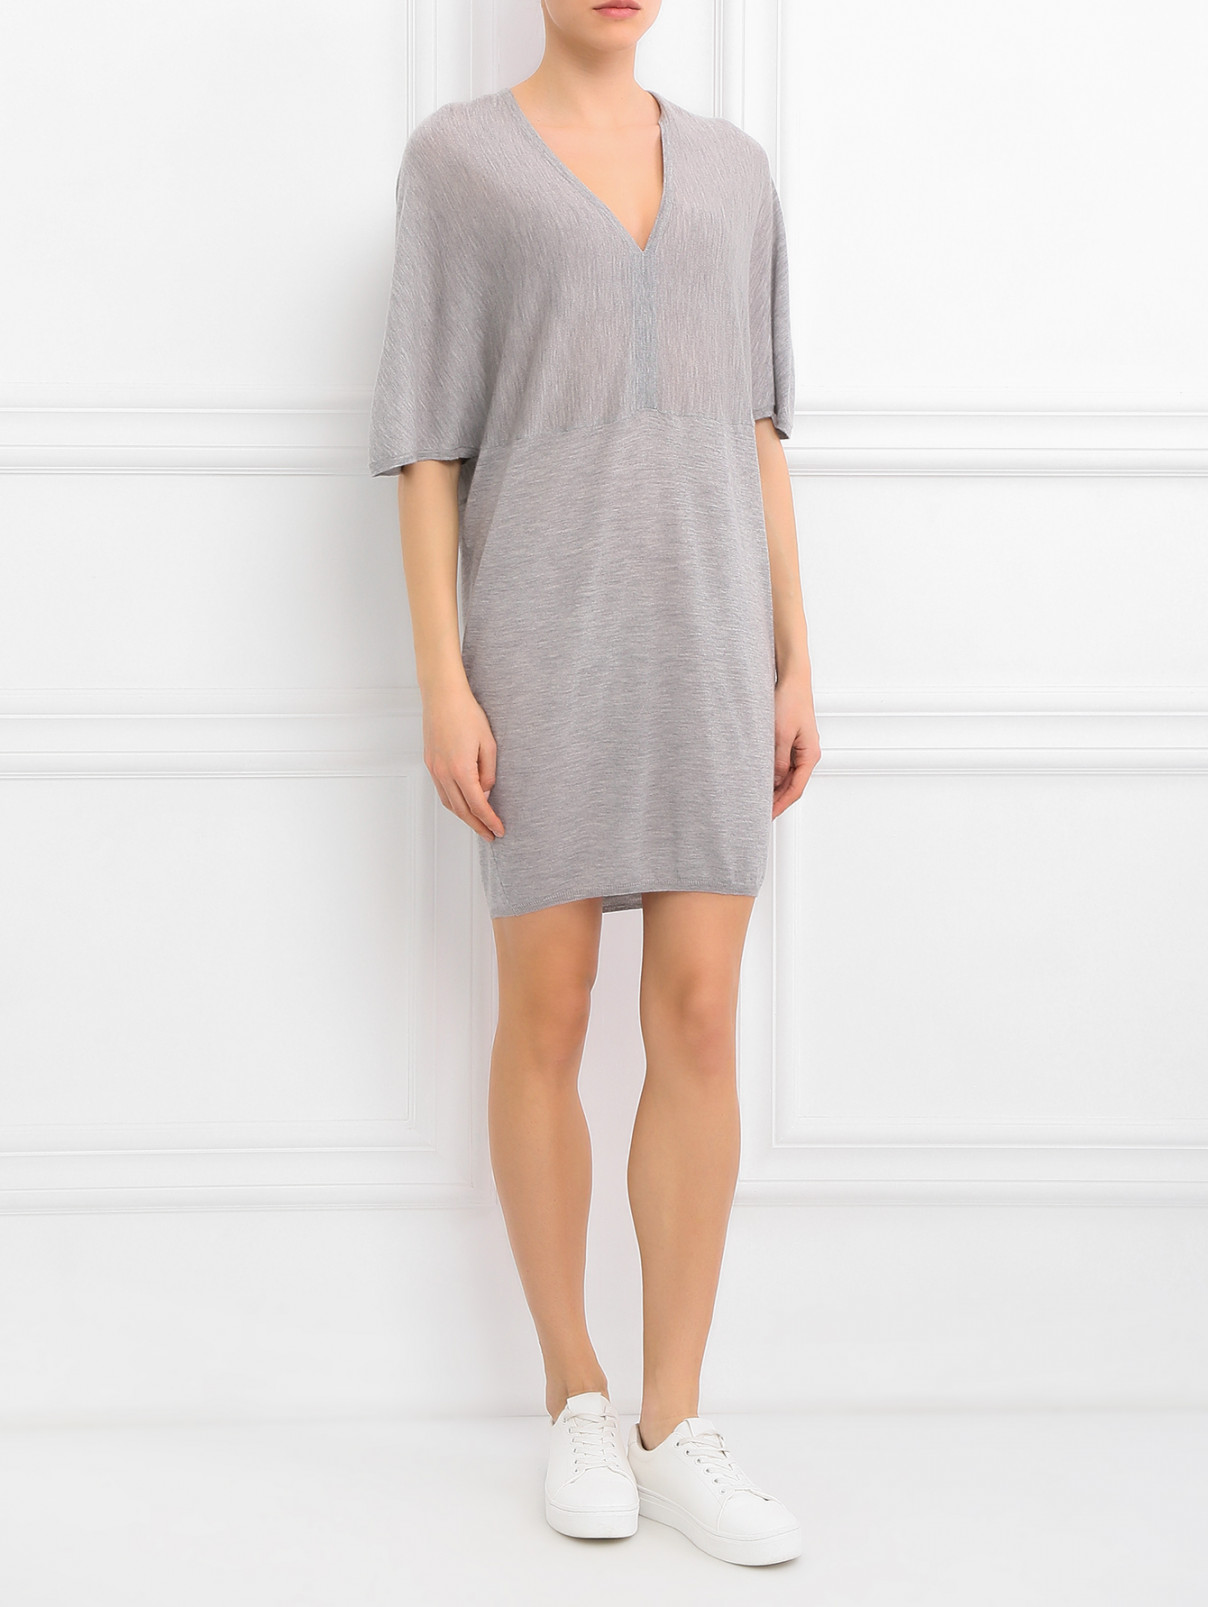 Платье из кашемира с V - образным вырезом Paul&Joe  –  Модель Общий вид  – Цвет:  Серый